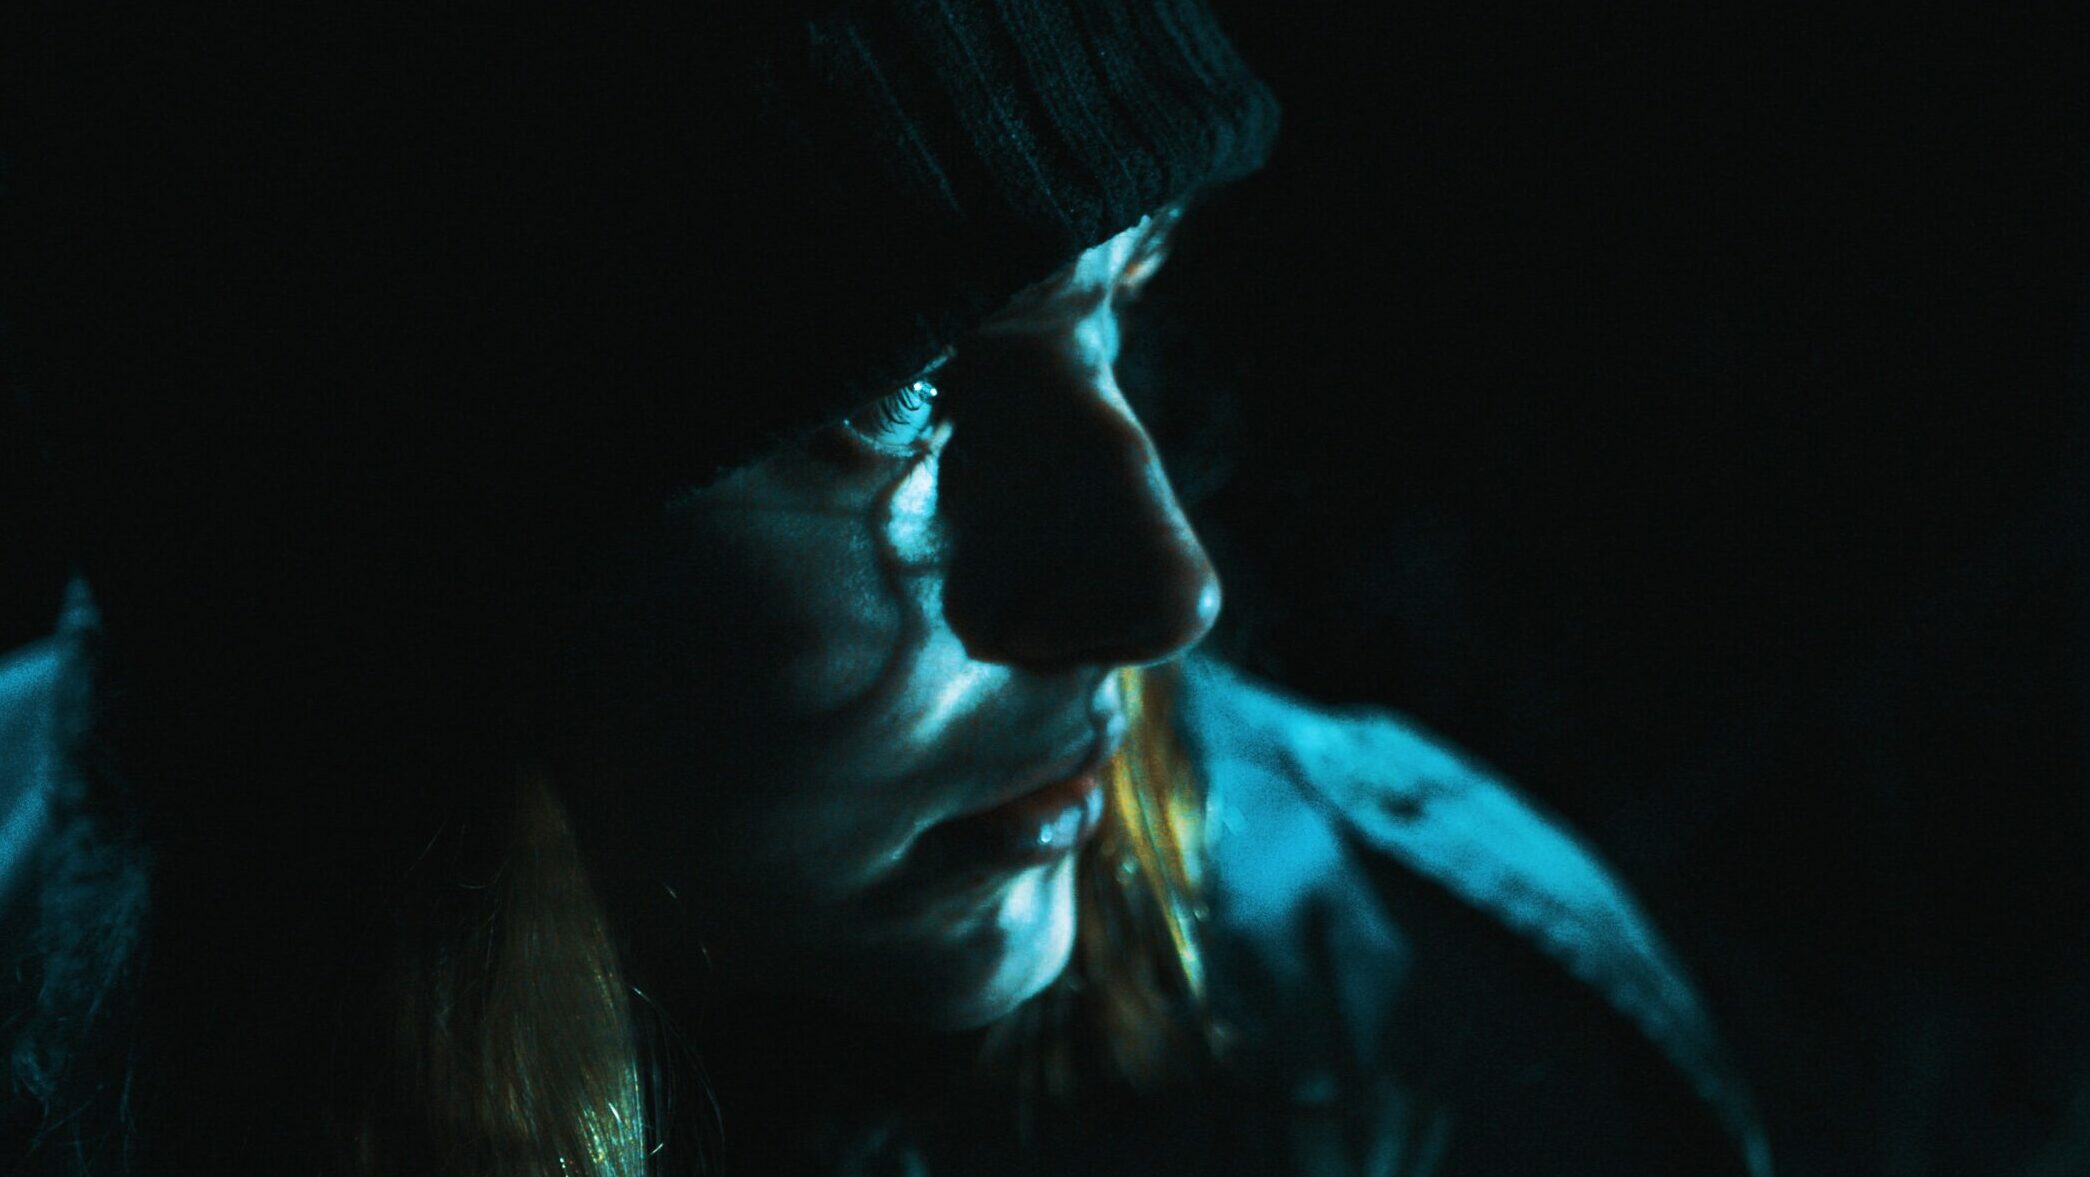 Lara Fee Baden im Film Zwischen den Ufern. Zwischen den Ufern ist eines der Projekte von Benjamin Lehmann